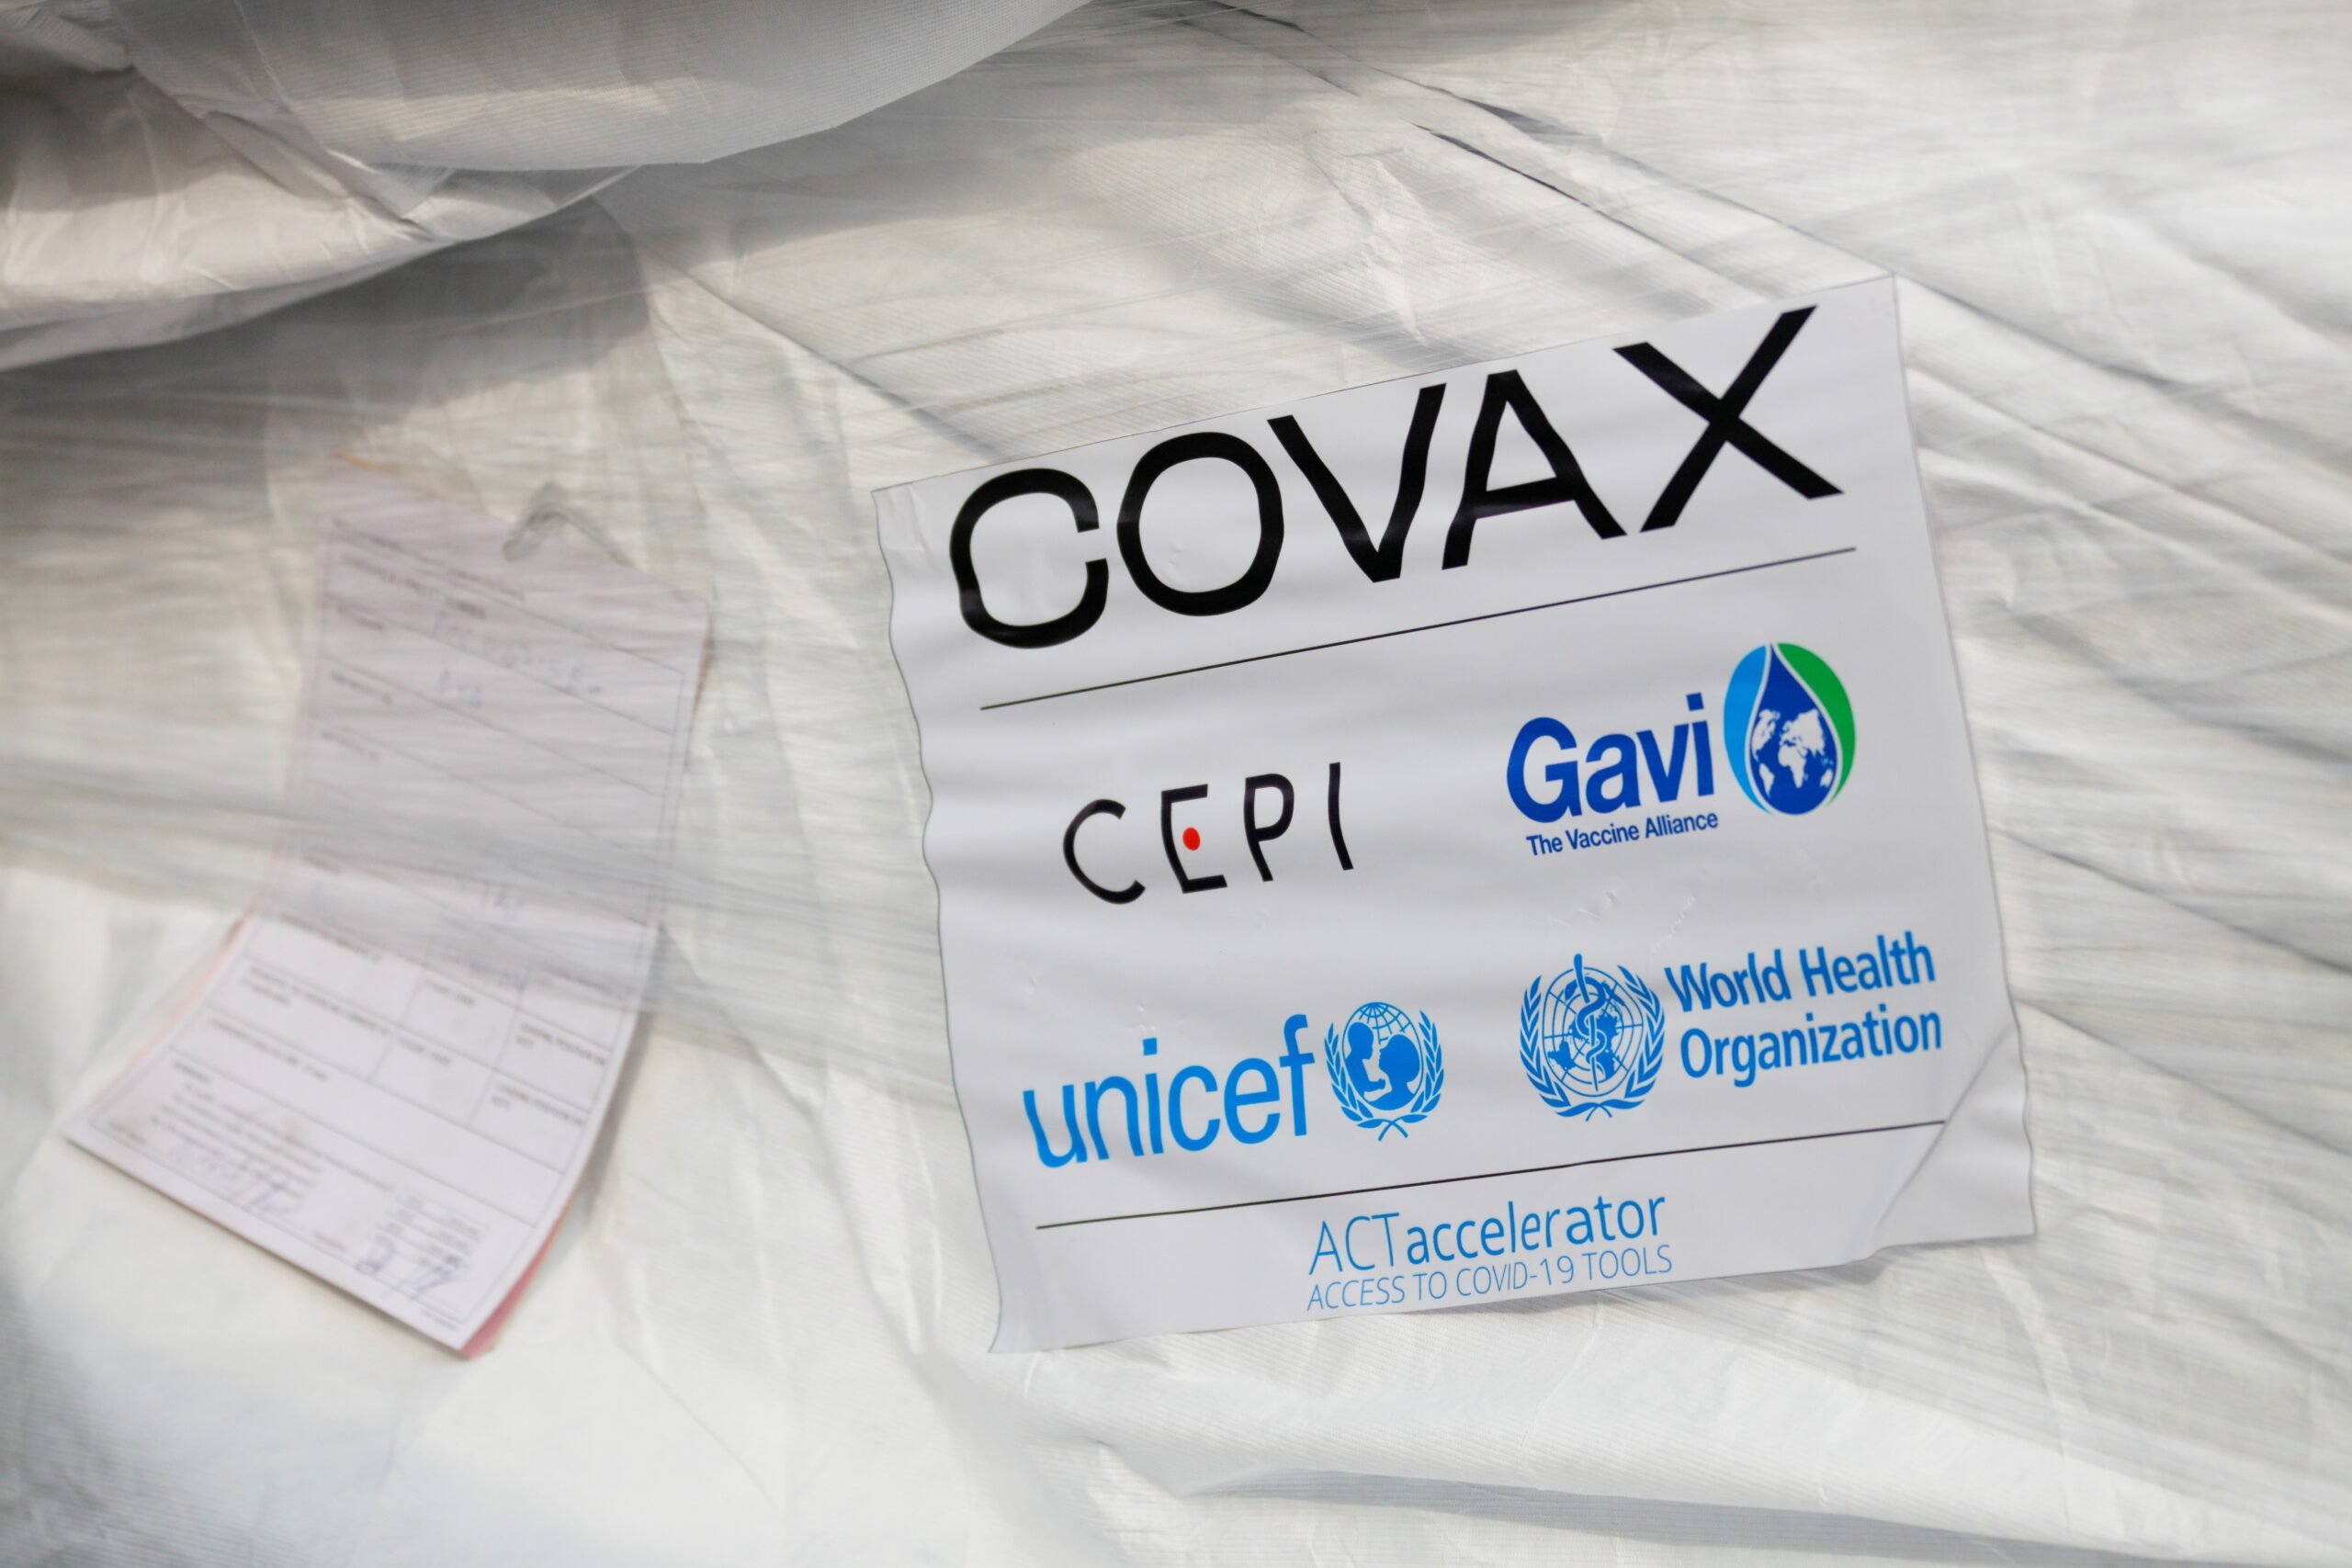 Οι πρώτες δόσεις εμβολίου που αποστέλλονται από την COVAX φτάνουν στη Γκάνα